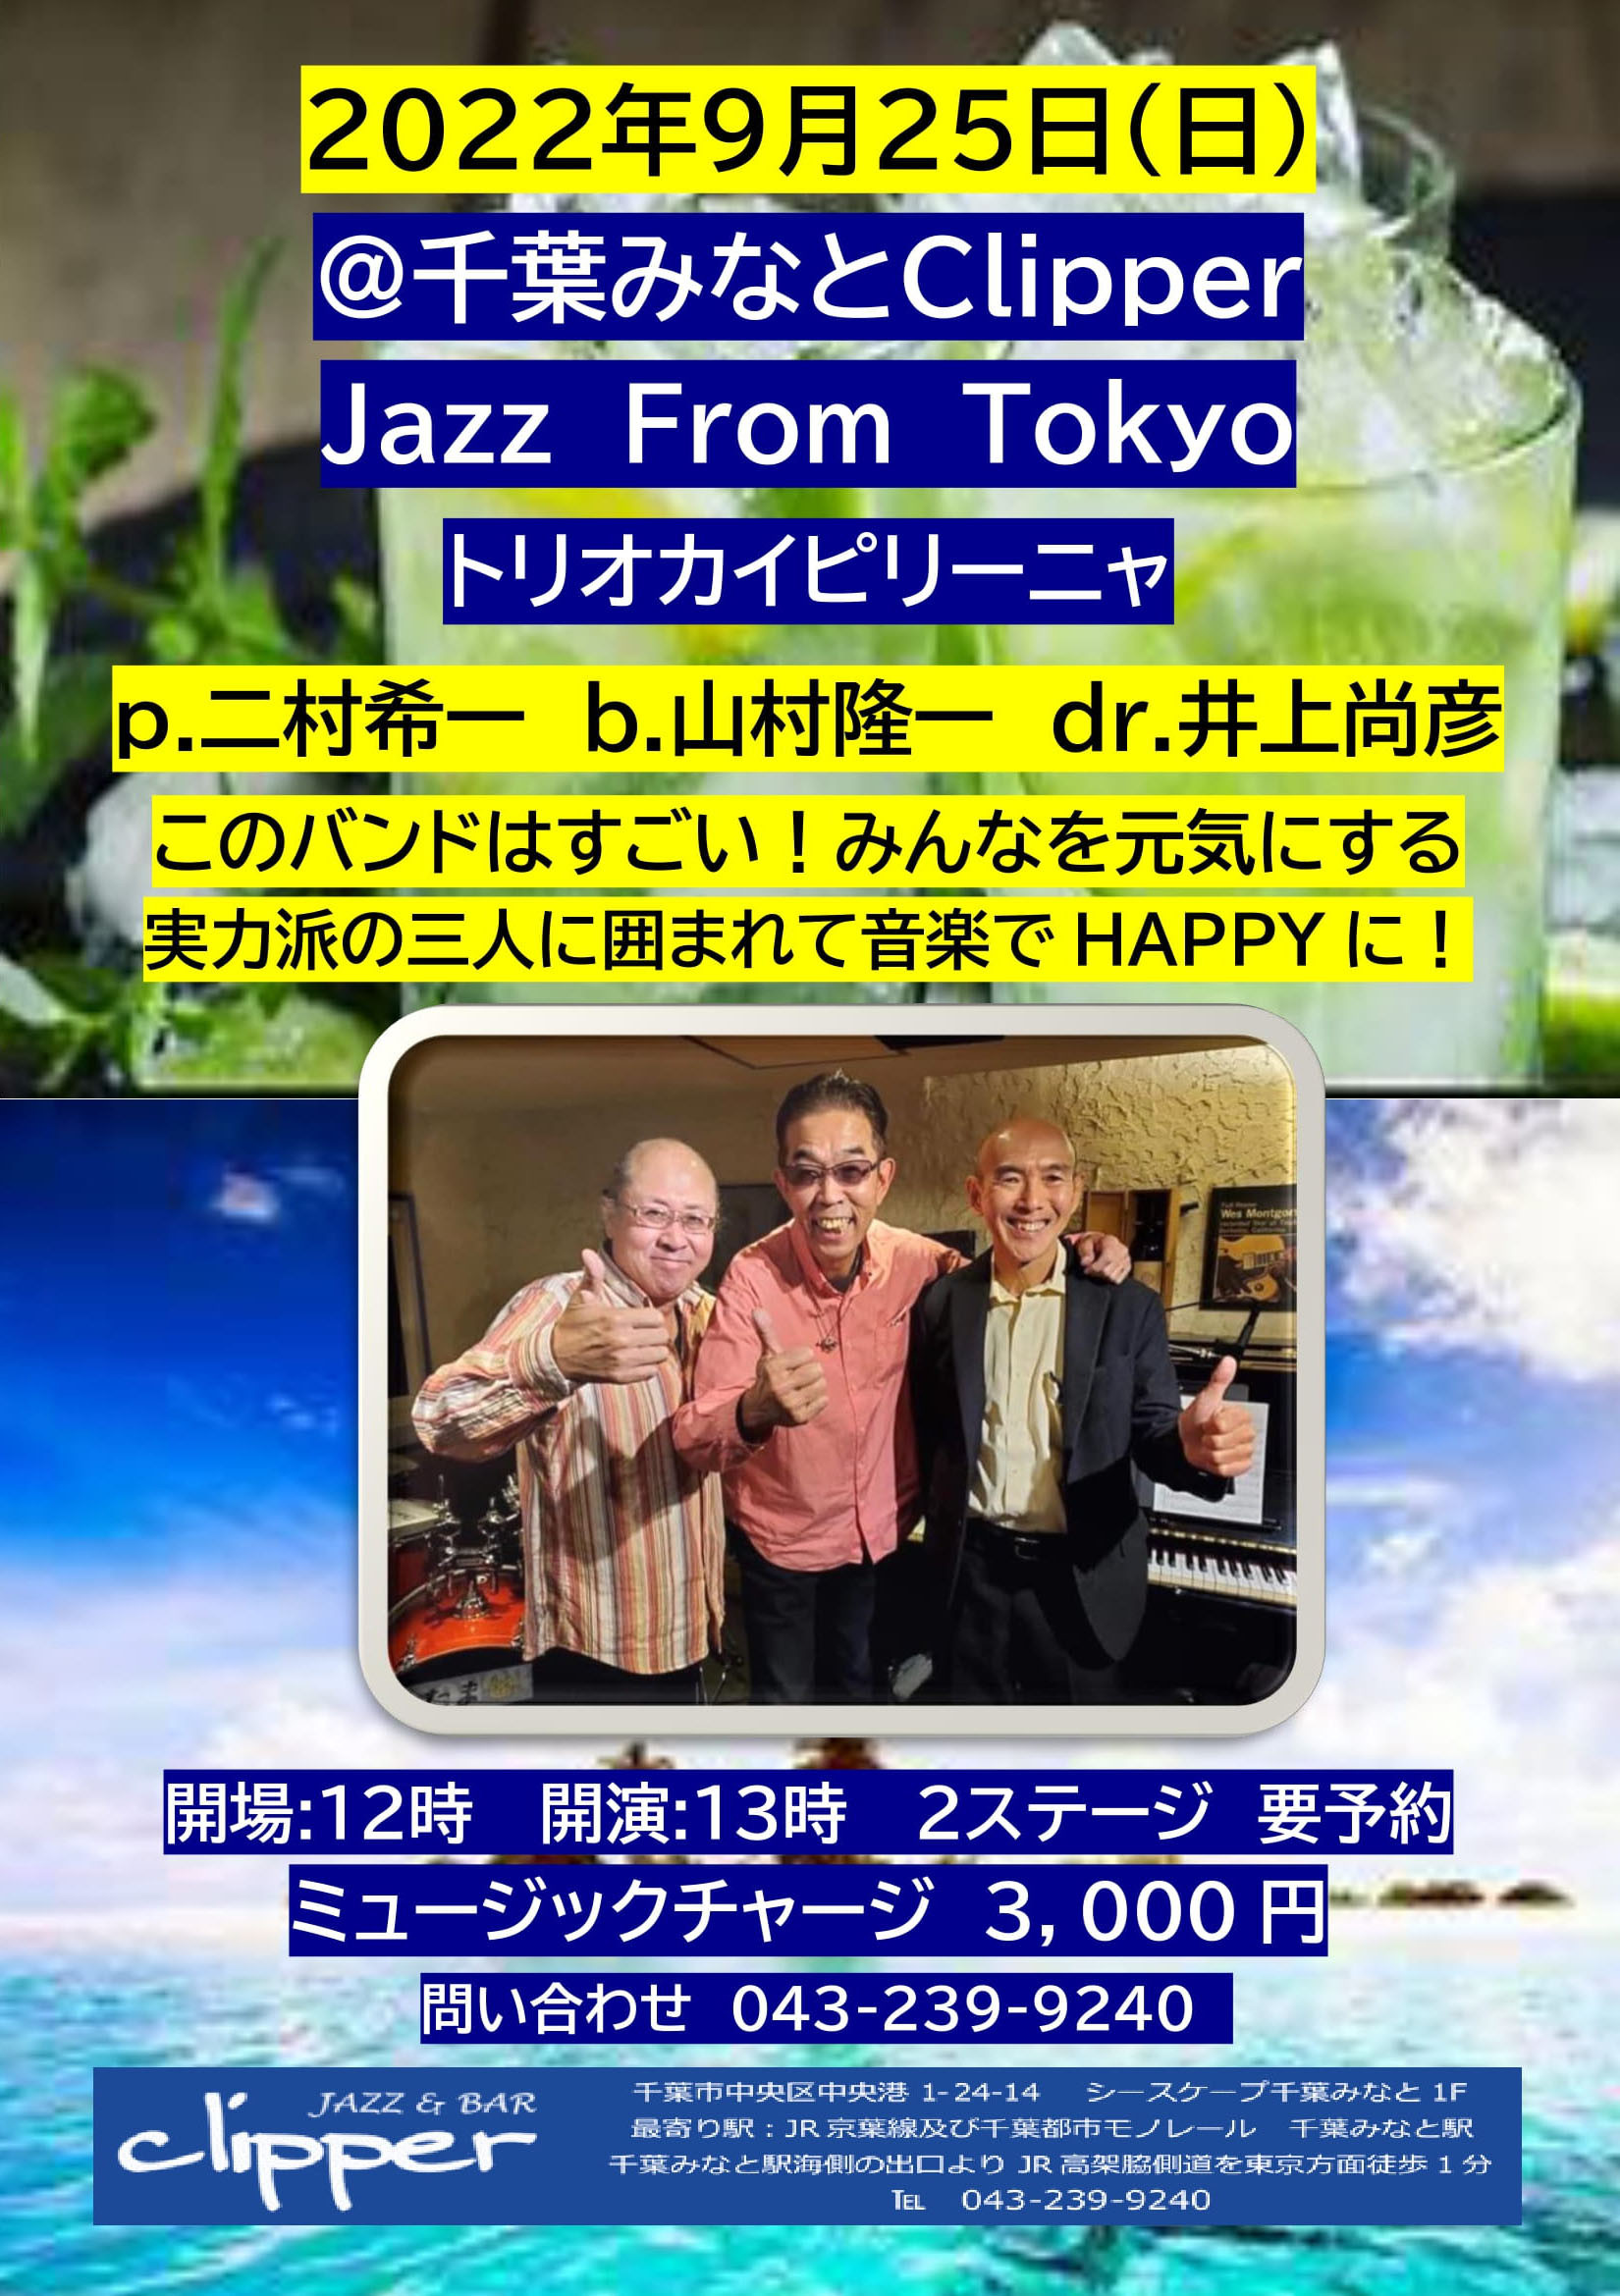 カイピリーニャ【Jazz from Tokyo Day】